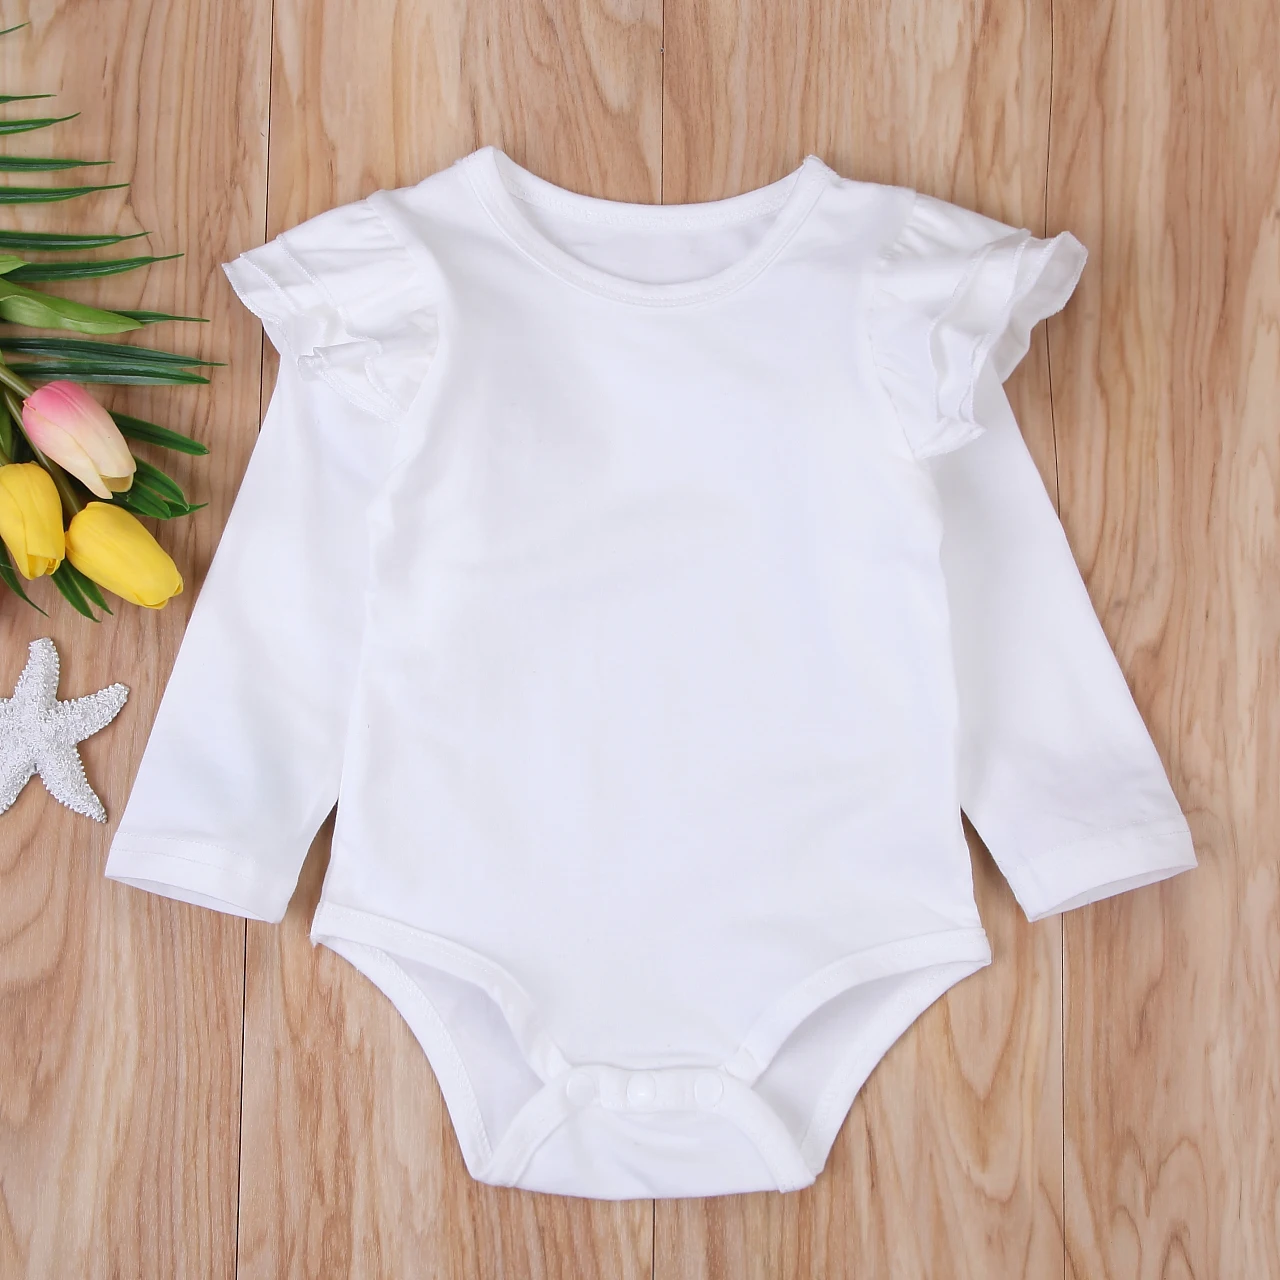 8 цветов, однотонный хлопковый Детский комбинезон с оборками, комбинезон для новорожденных девочек и мальчиков, Униформа-комбинезон с длинными рукавами, одежда От 3 месяцев до 2 лет - Цвет: Белый